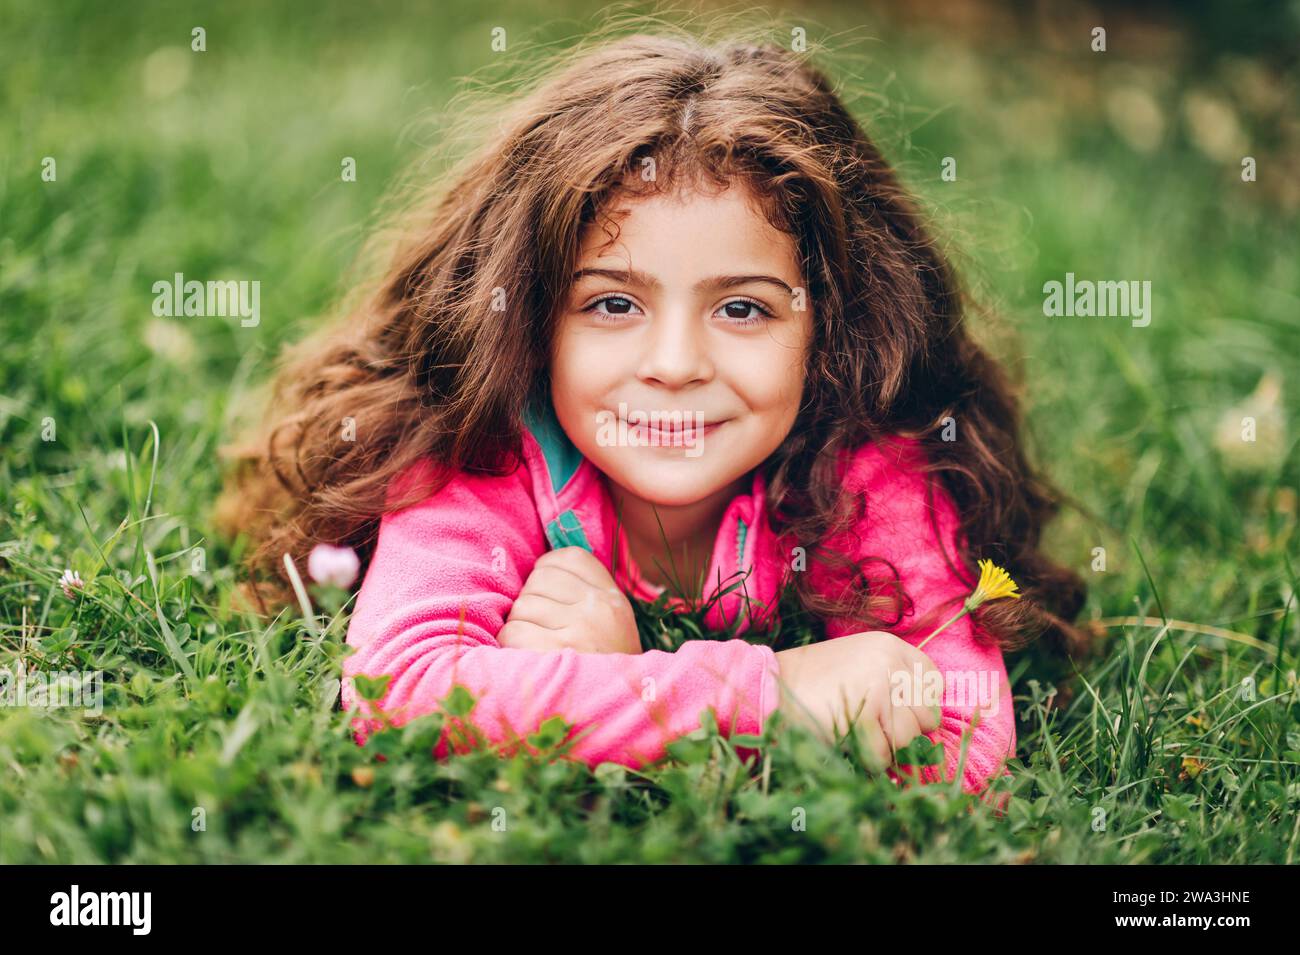 Outdoor-Porträt eines entzückenden kleinen 3-4-jährigen Mädchens mit schönen langen Haaren, in rosa Fleecejacke, auf grünem Gras liegend, mit gelbem Floß Stockfoto